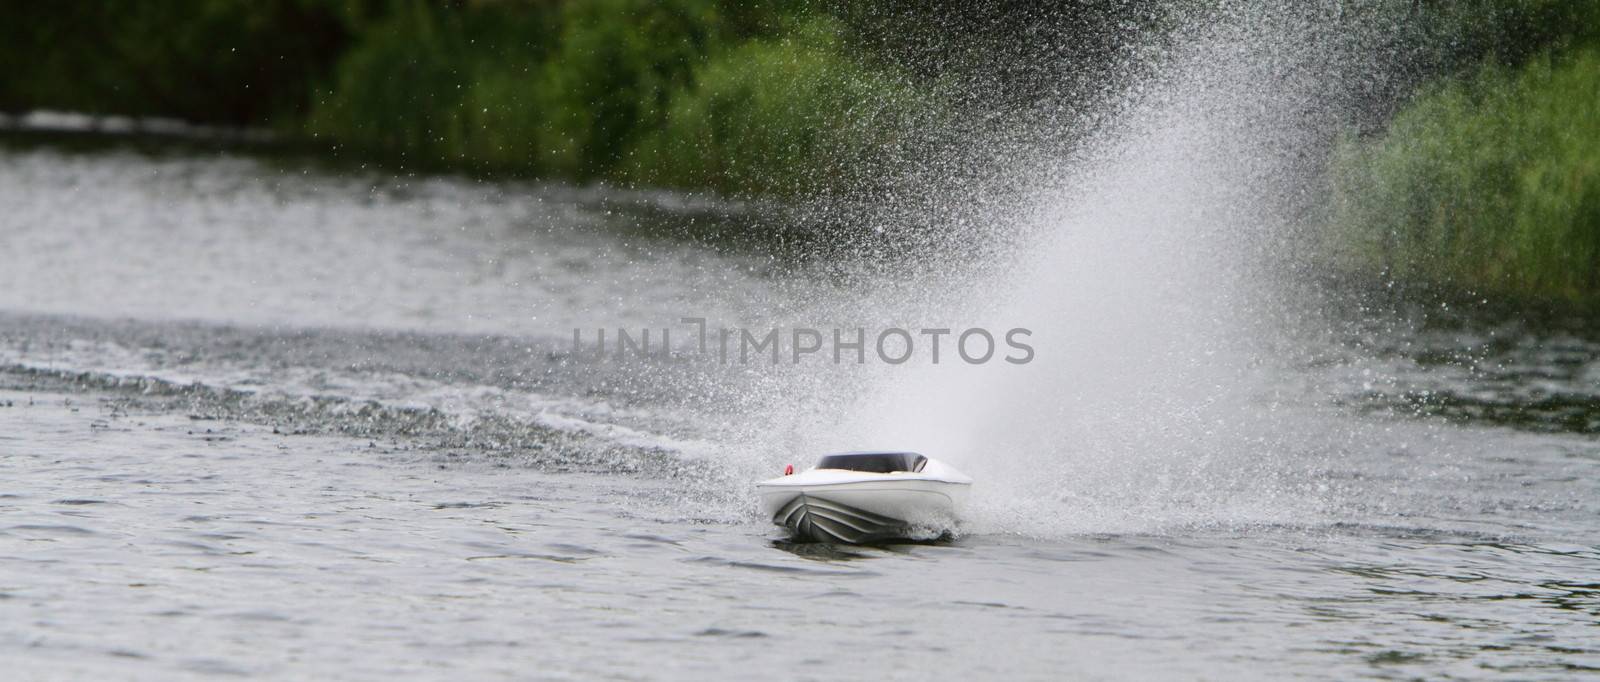 model speed boat on water